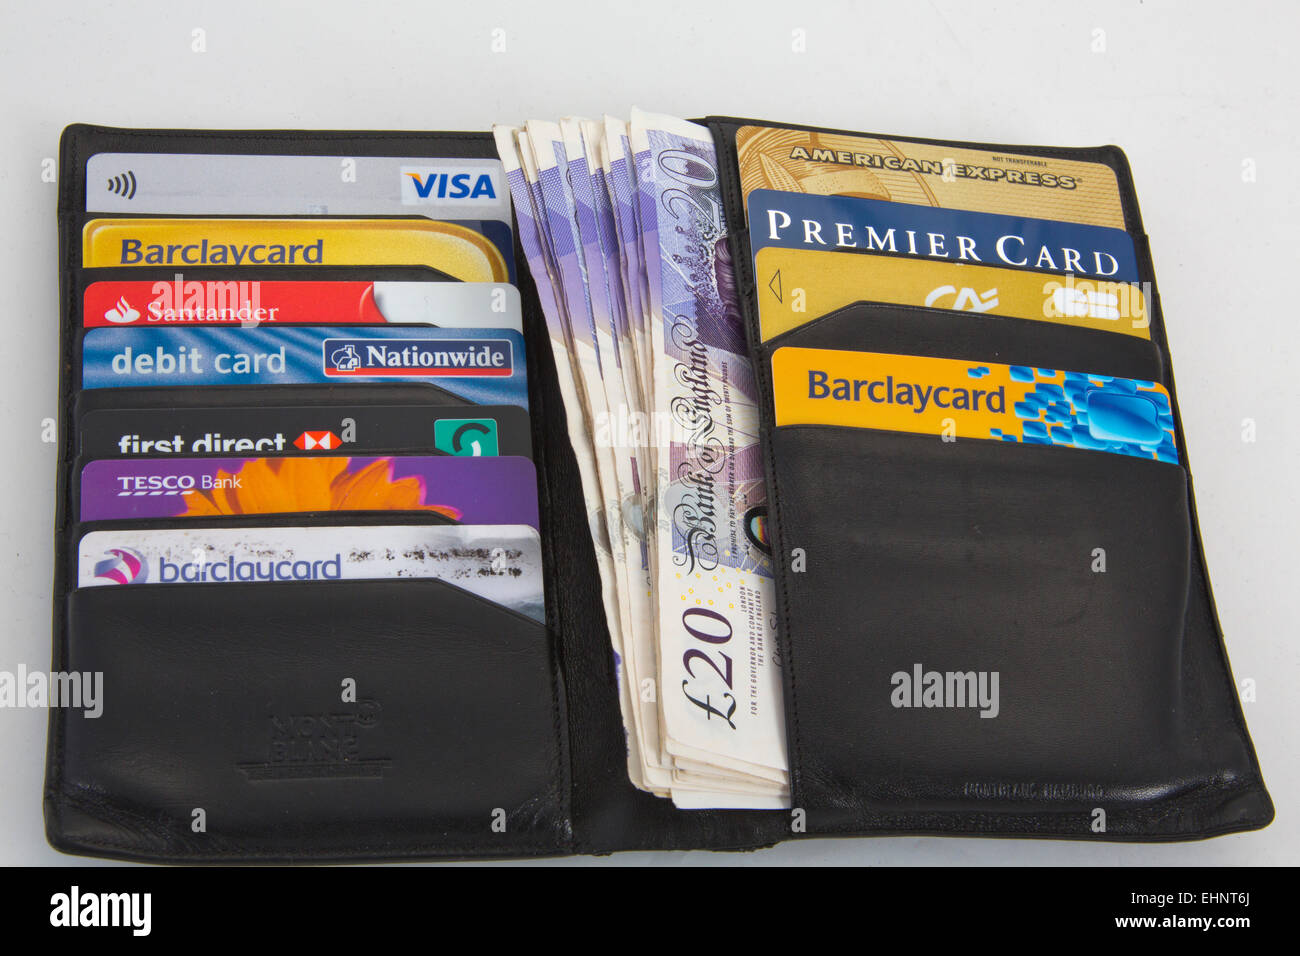 Custodia nera con assortimento di carte di credito Visa e American express 151142 carte di credito Foto Stock